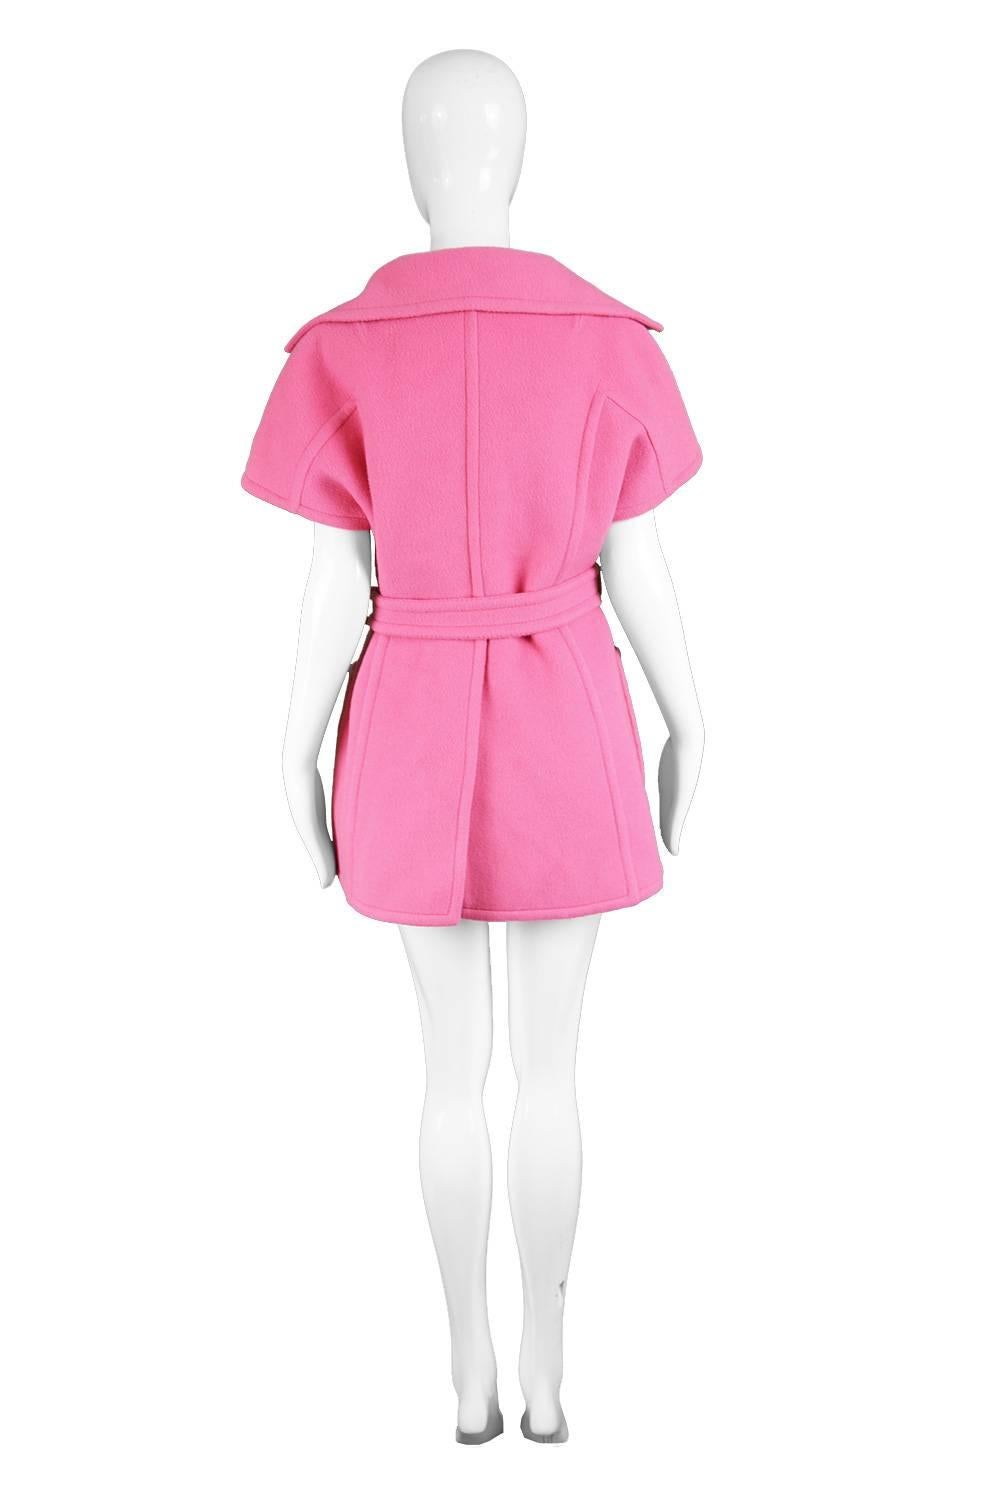 Jean Charma Paris Vintage Couture Minimalist Bubblegum Pink Wool Jacket, 1960s  For Sale 2